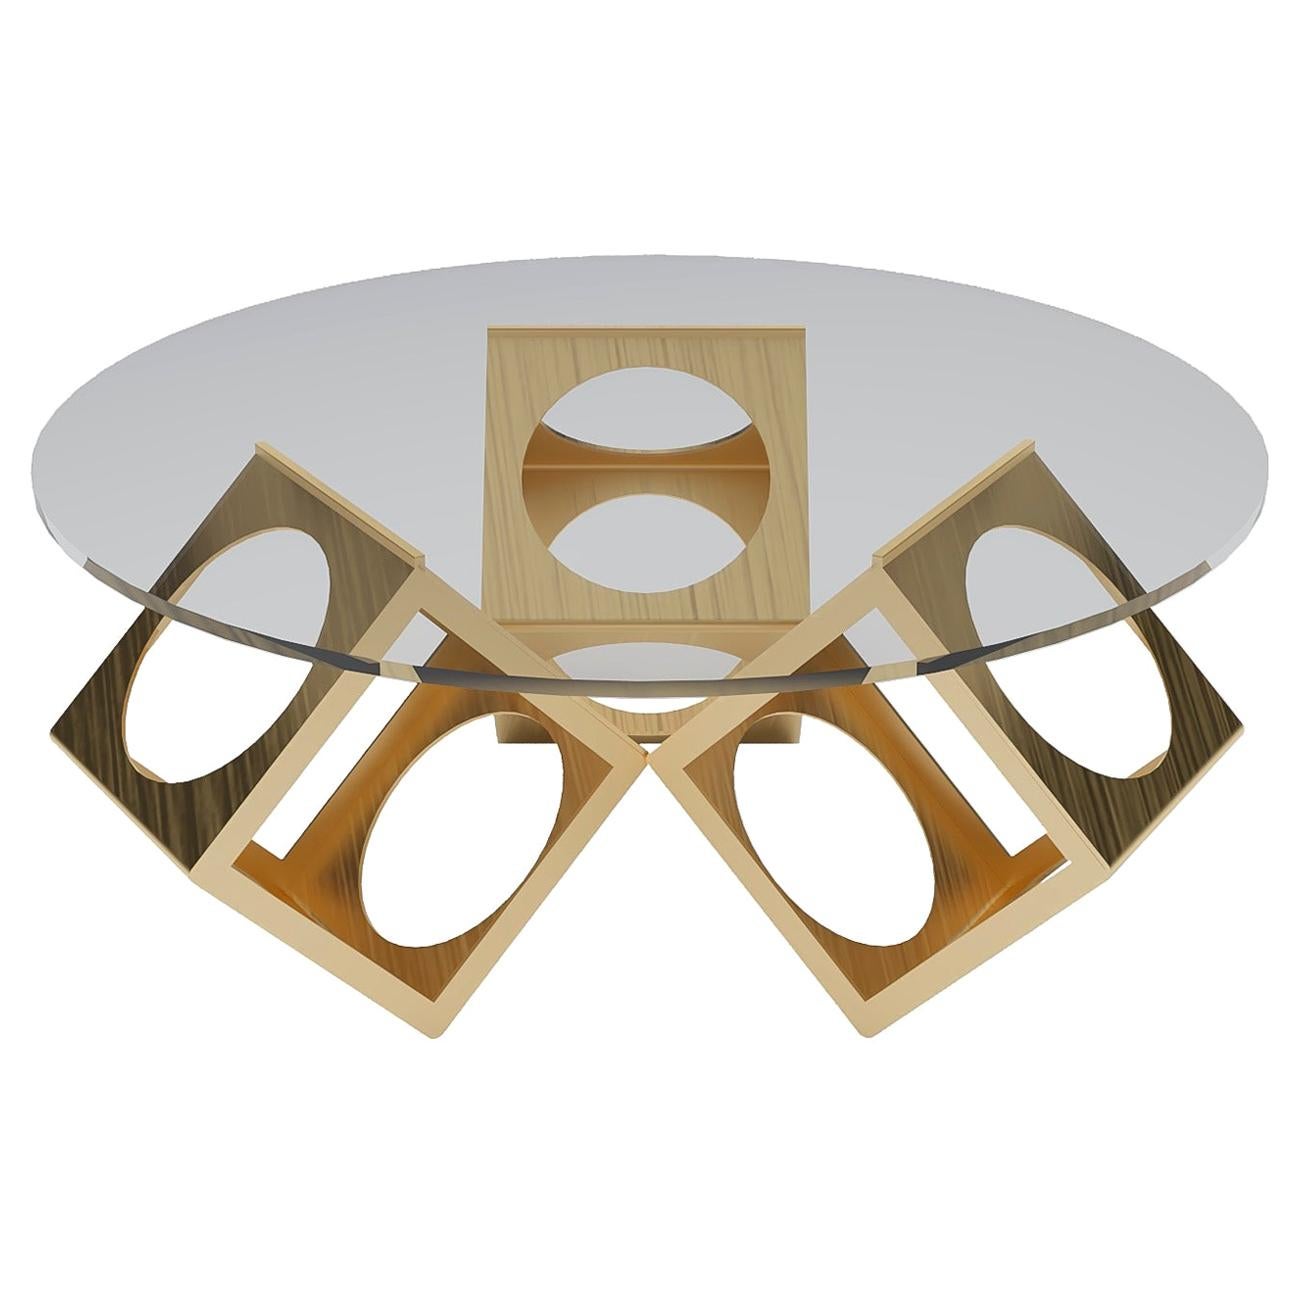 La table ronde en forme de boîte conçue par Laurie Beckerman